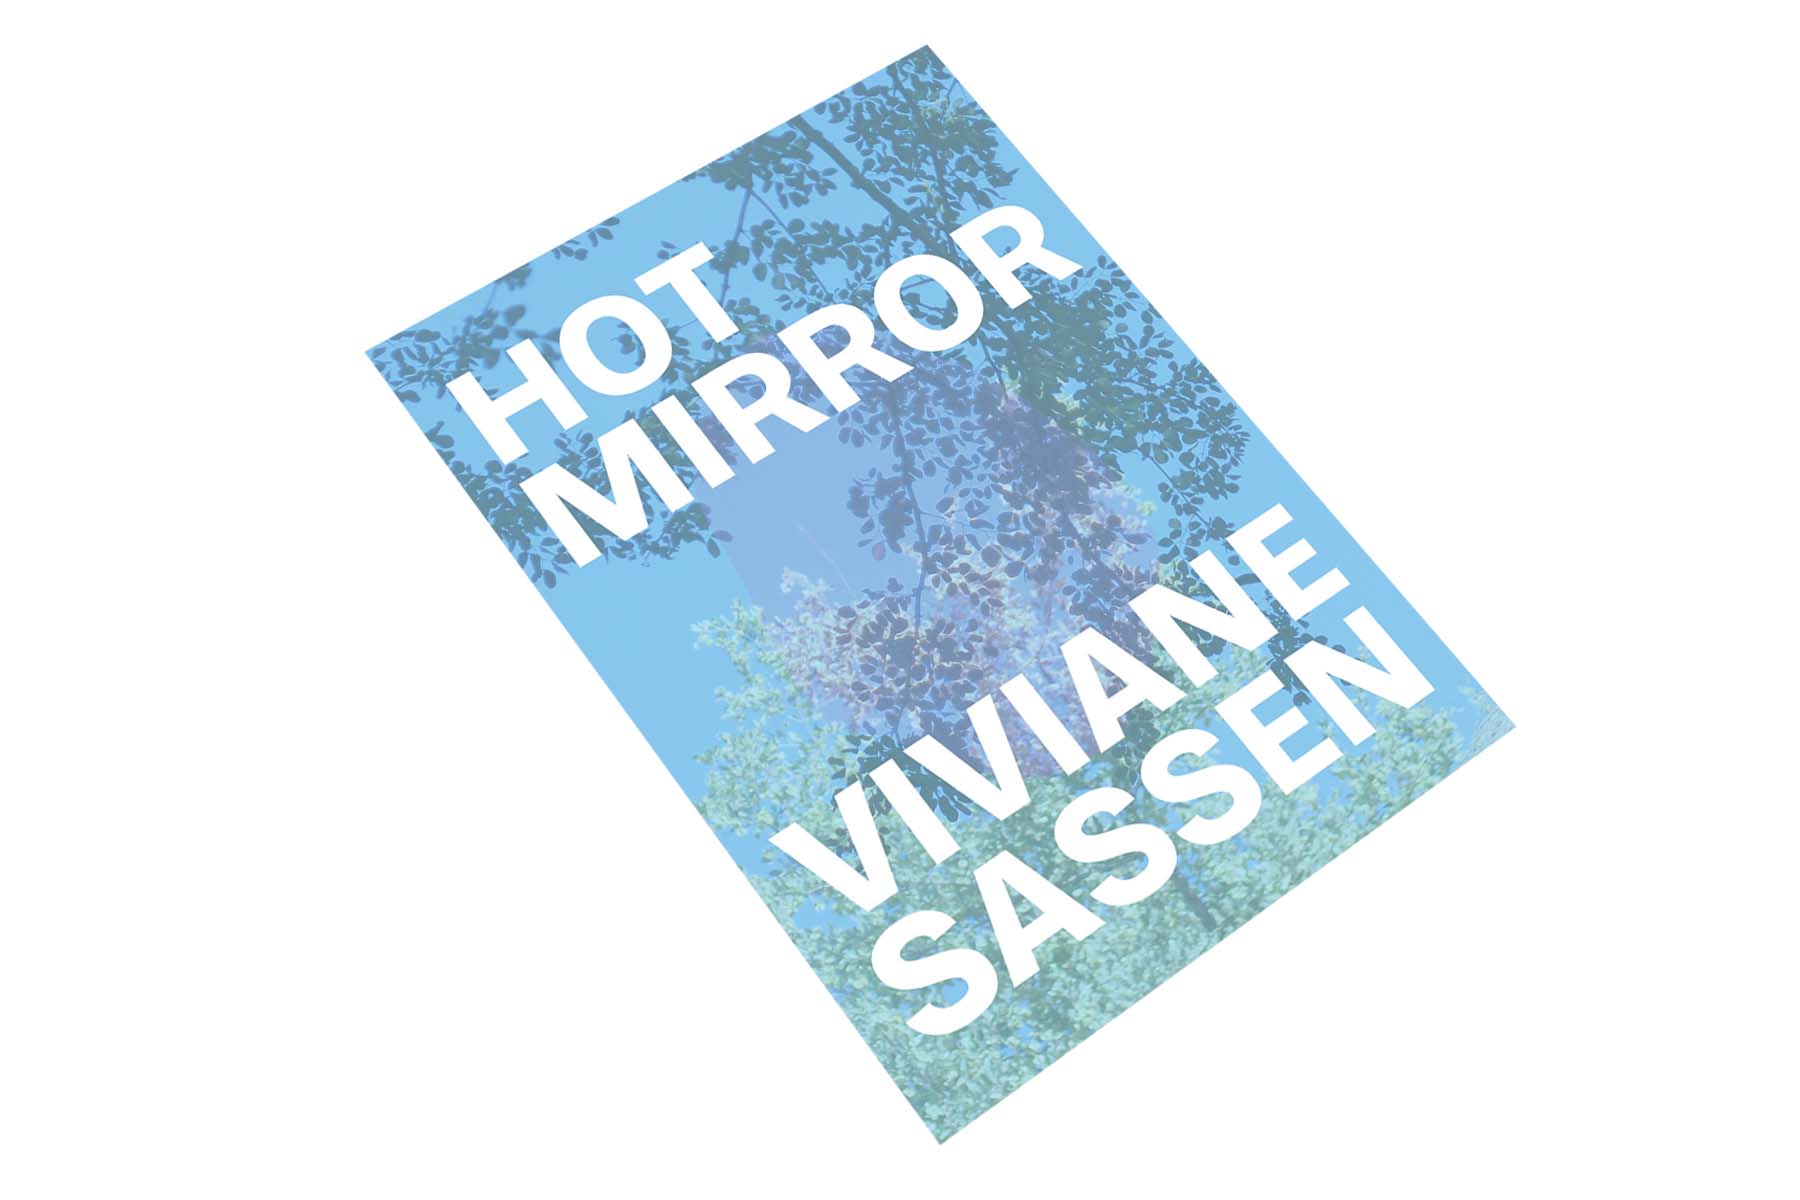 Viviane Sassen: Hot Mirror 